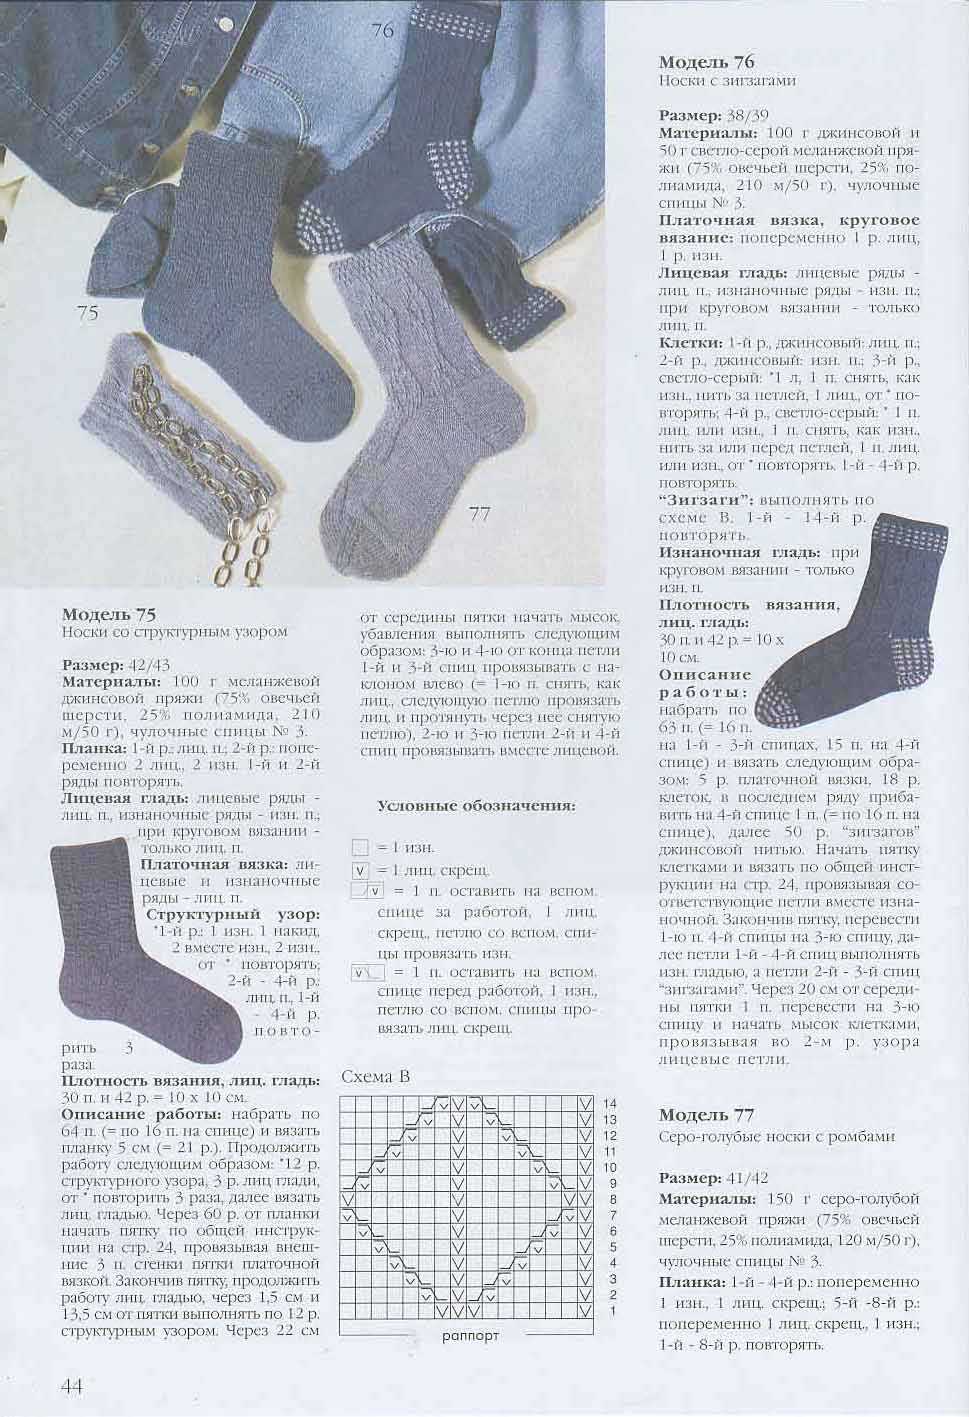 Носки крючком - пошаговая инструкция, как связать